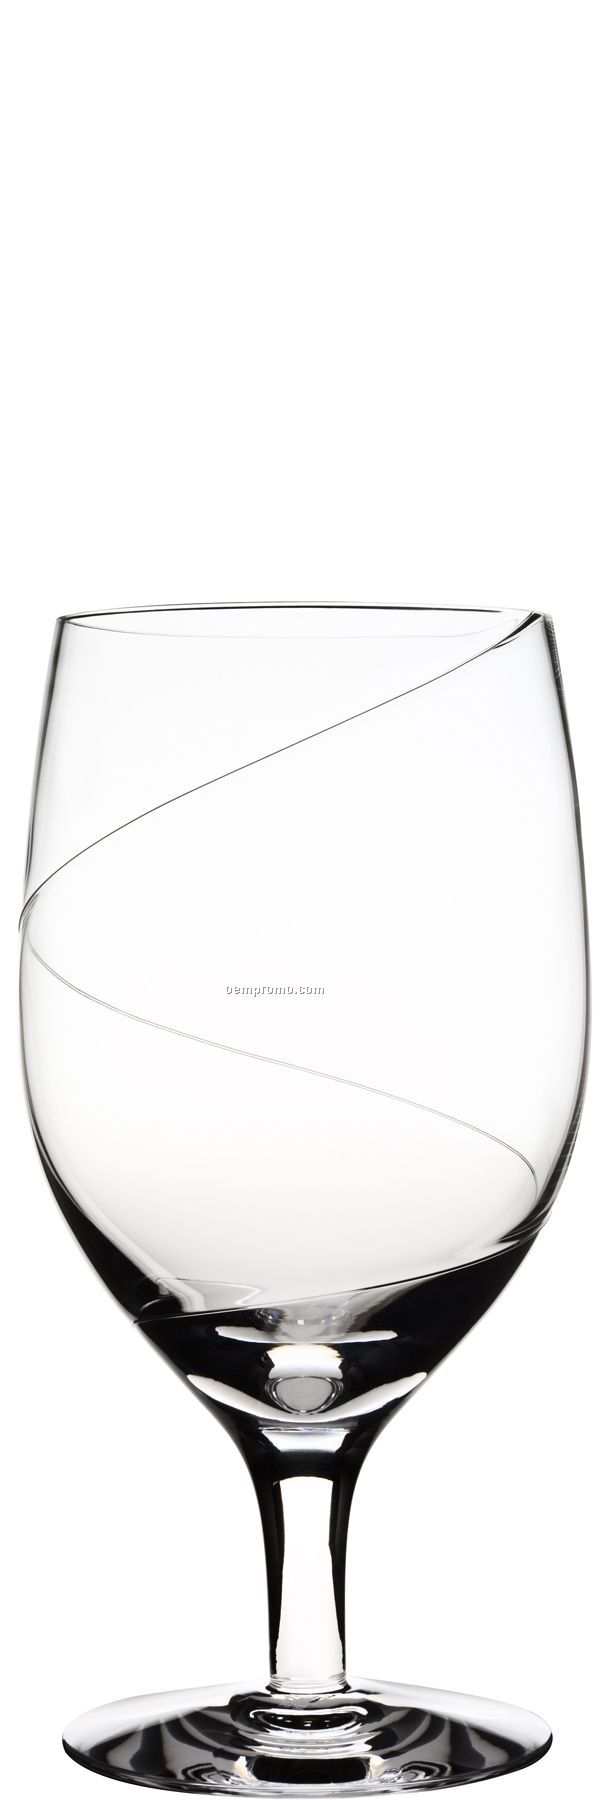 Line Glass Iced Beverage Stemware W/ Swirl Design By Anna Ehrner